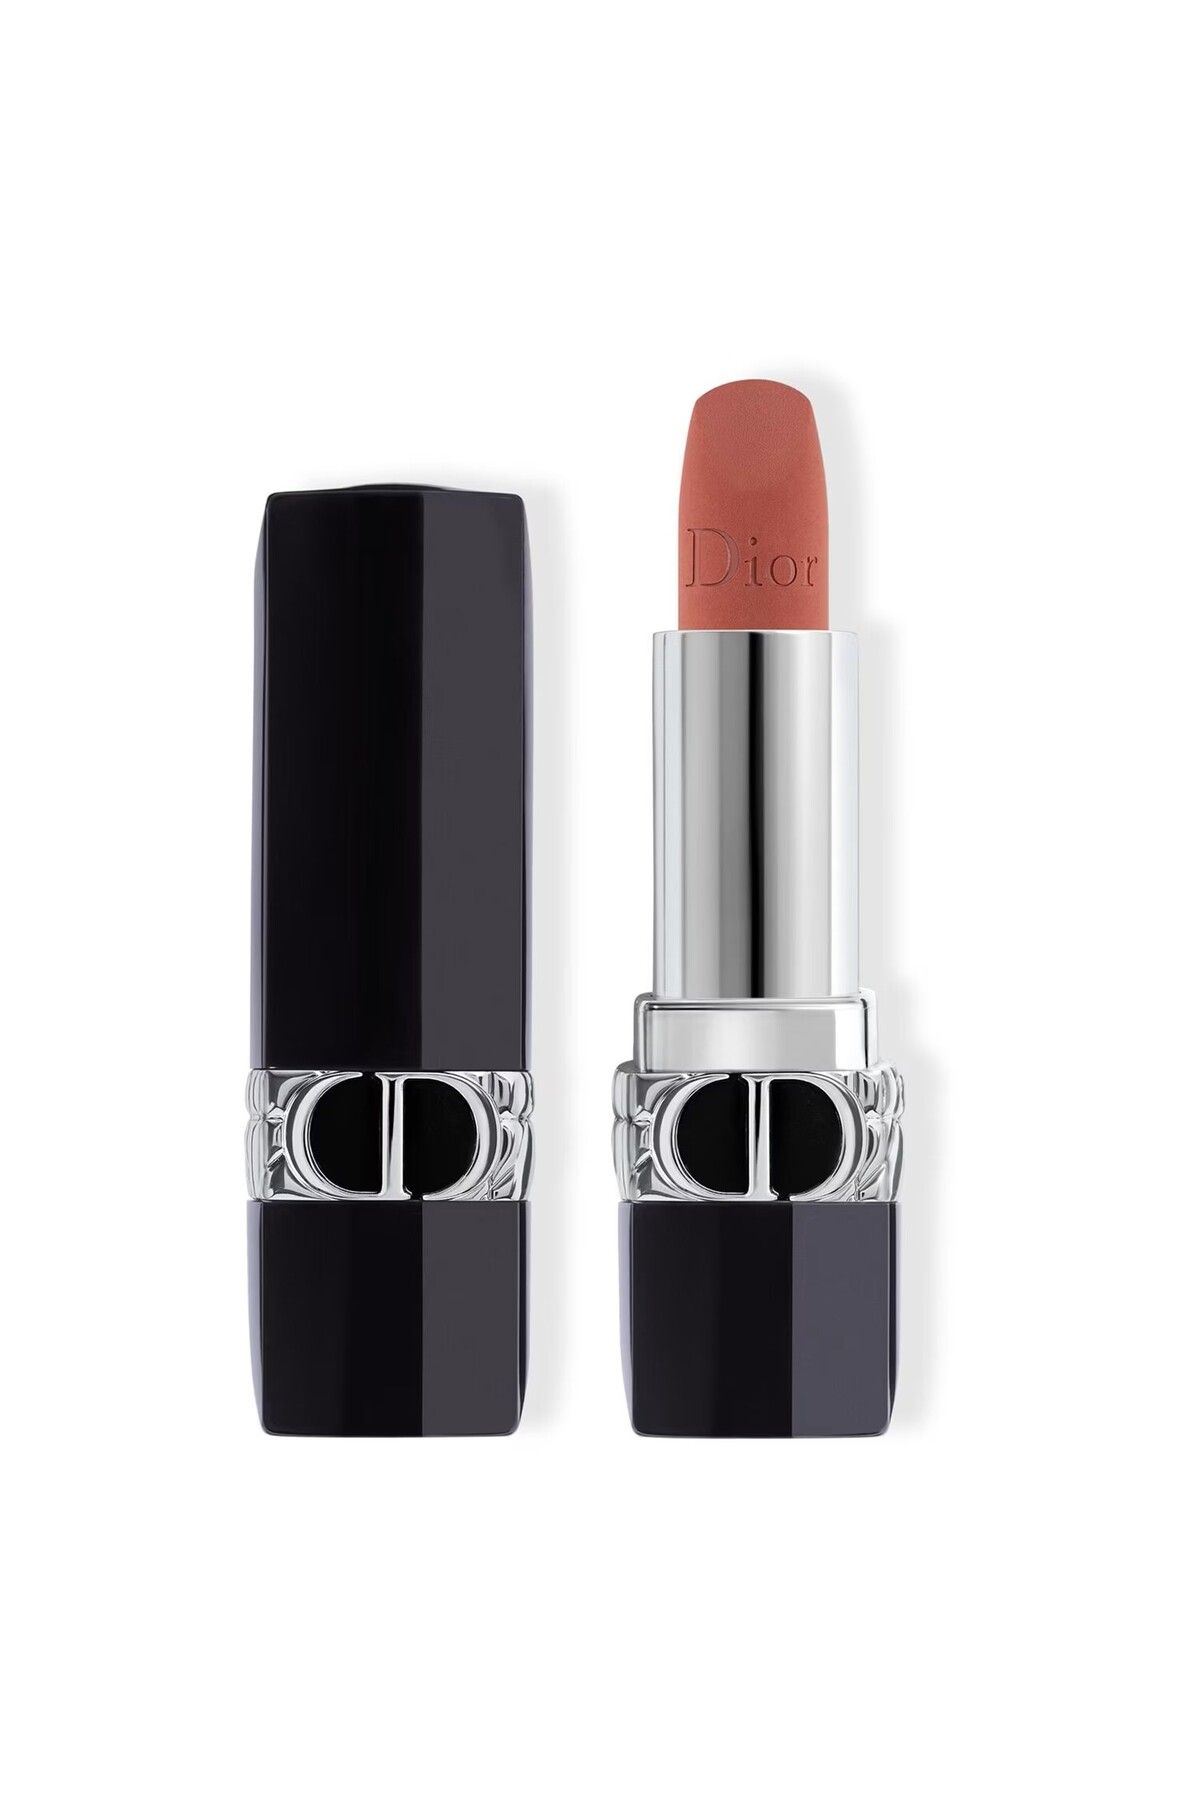 Dior Rouge Dior Floral Care Lip Balm - 24 Saate Kadar Nemlendirme Etkili Pürüzsüzleştirici Ruj